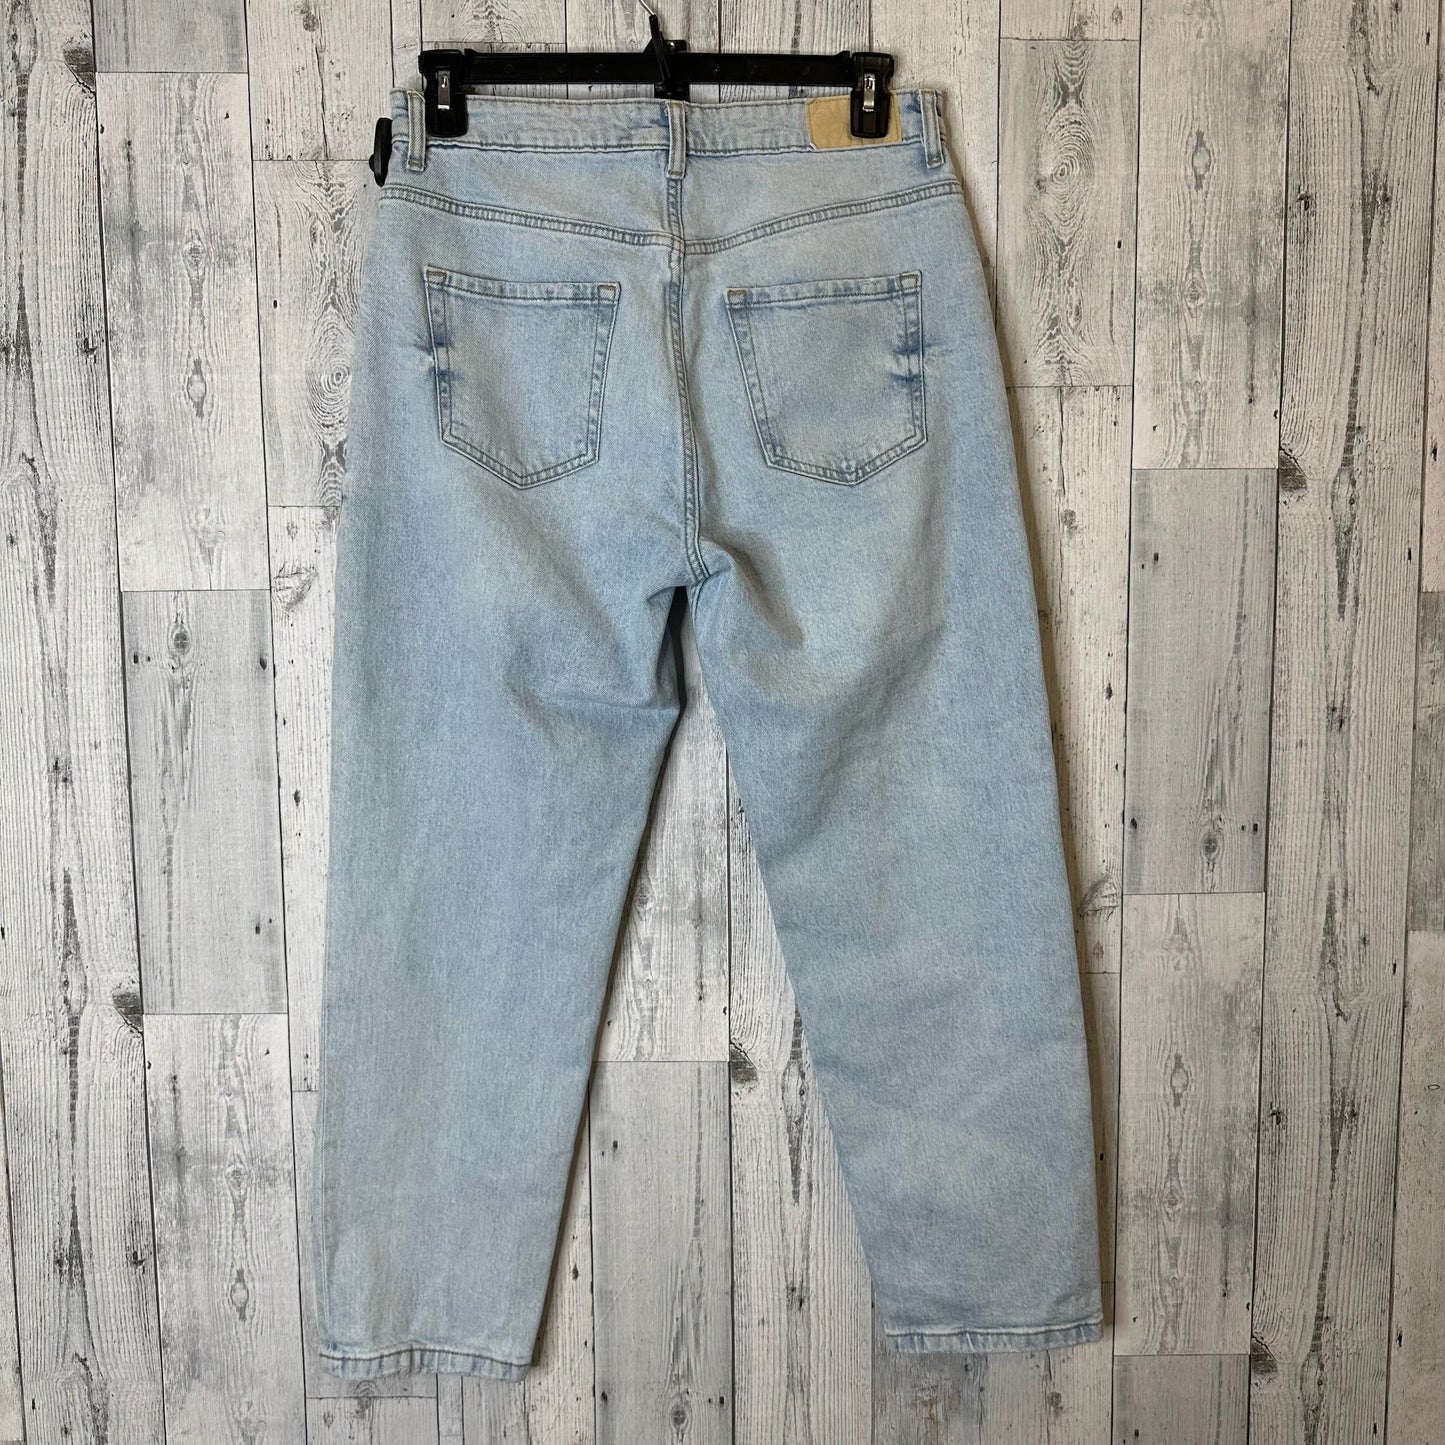 Jeans Relaxed/boyfriend By Zara  Size: 10